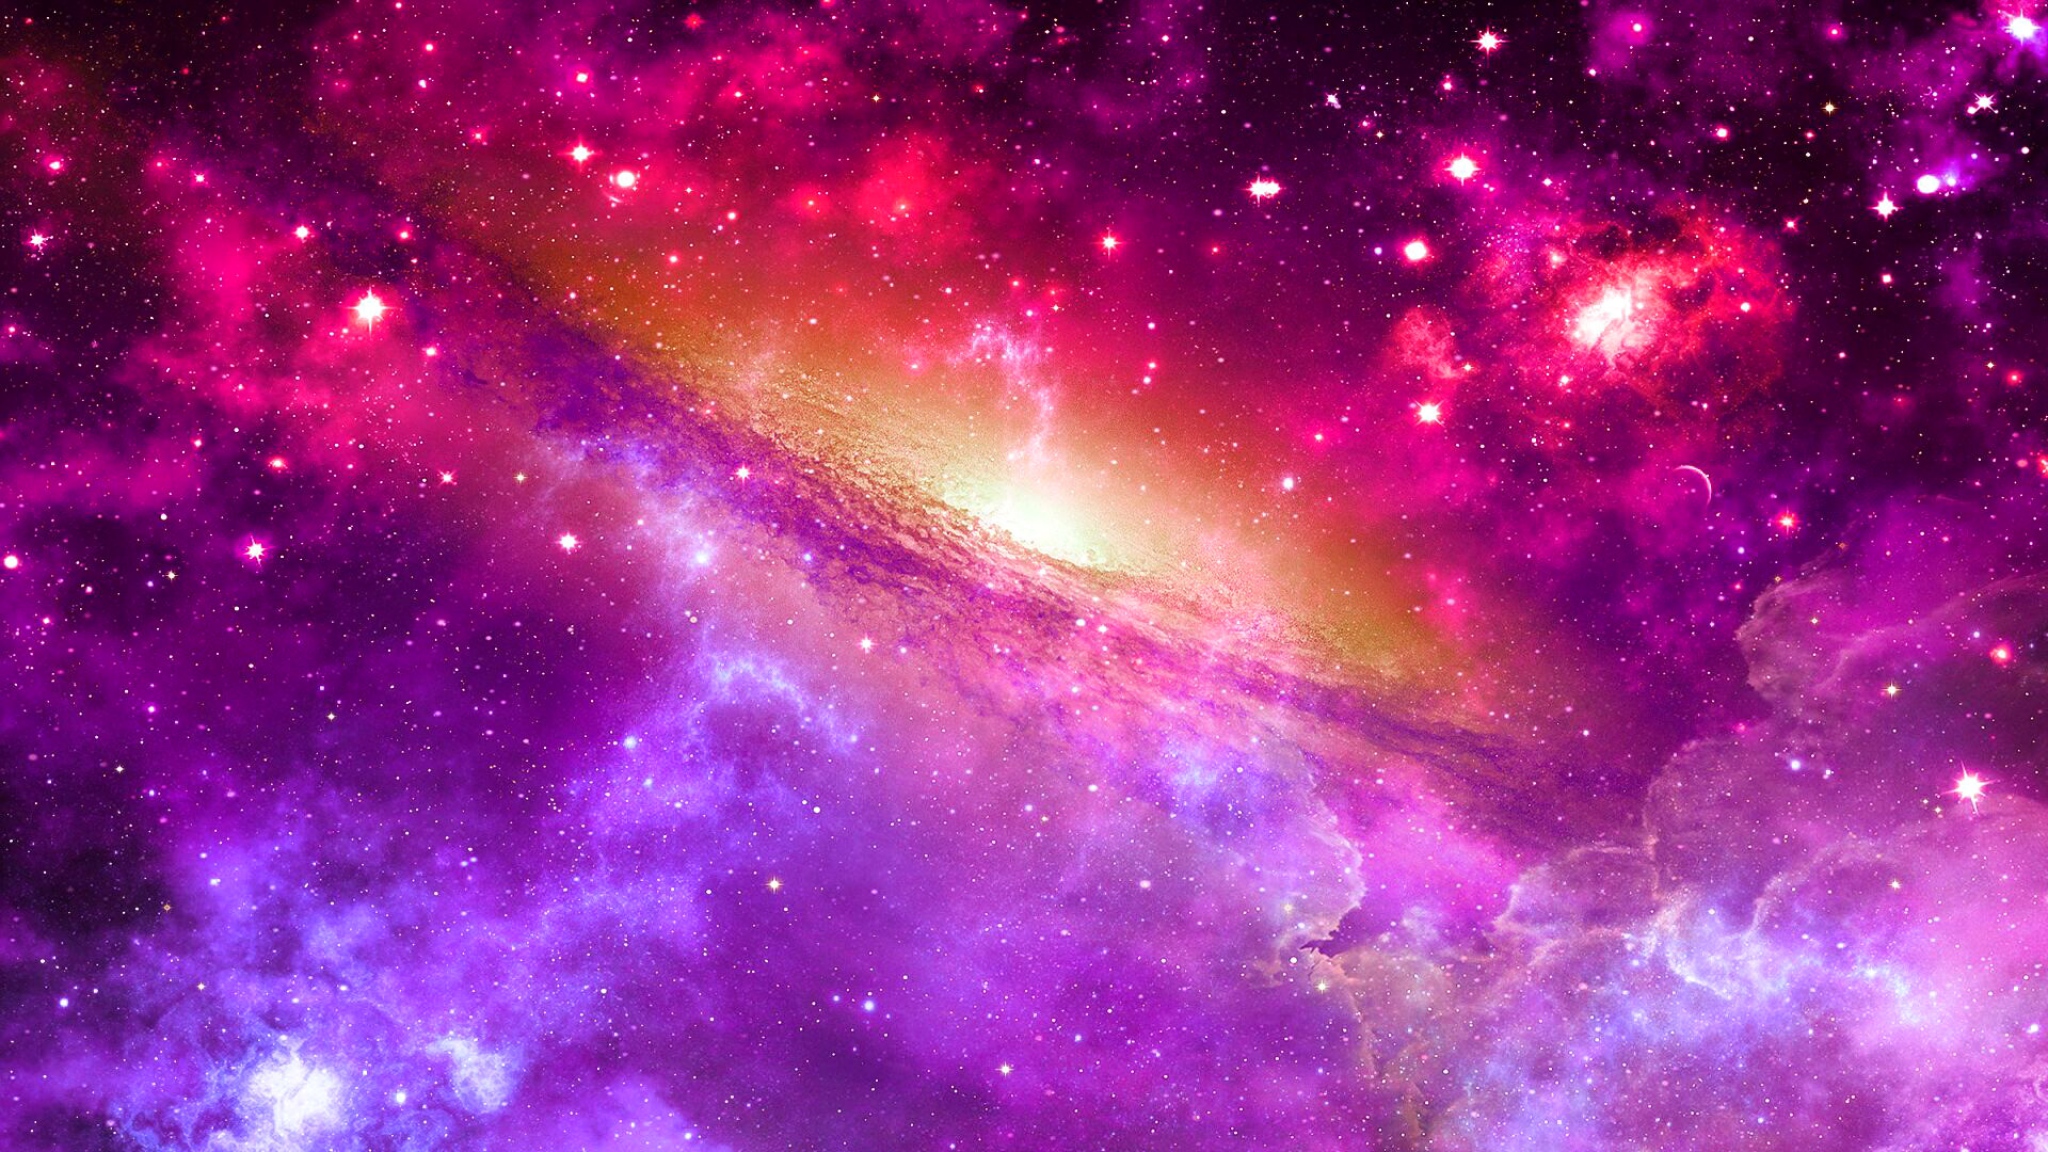 Обои Фиолетовый свет от звезд картинки на рабочий стол на тему Космос - скачать загрузить